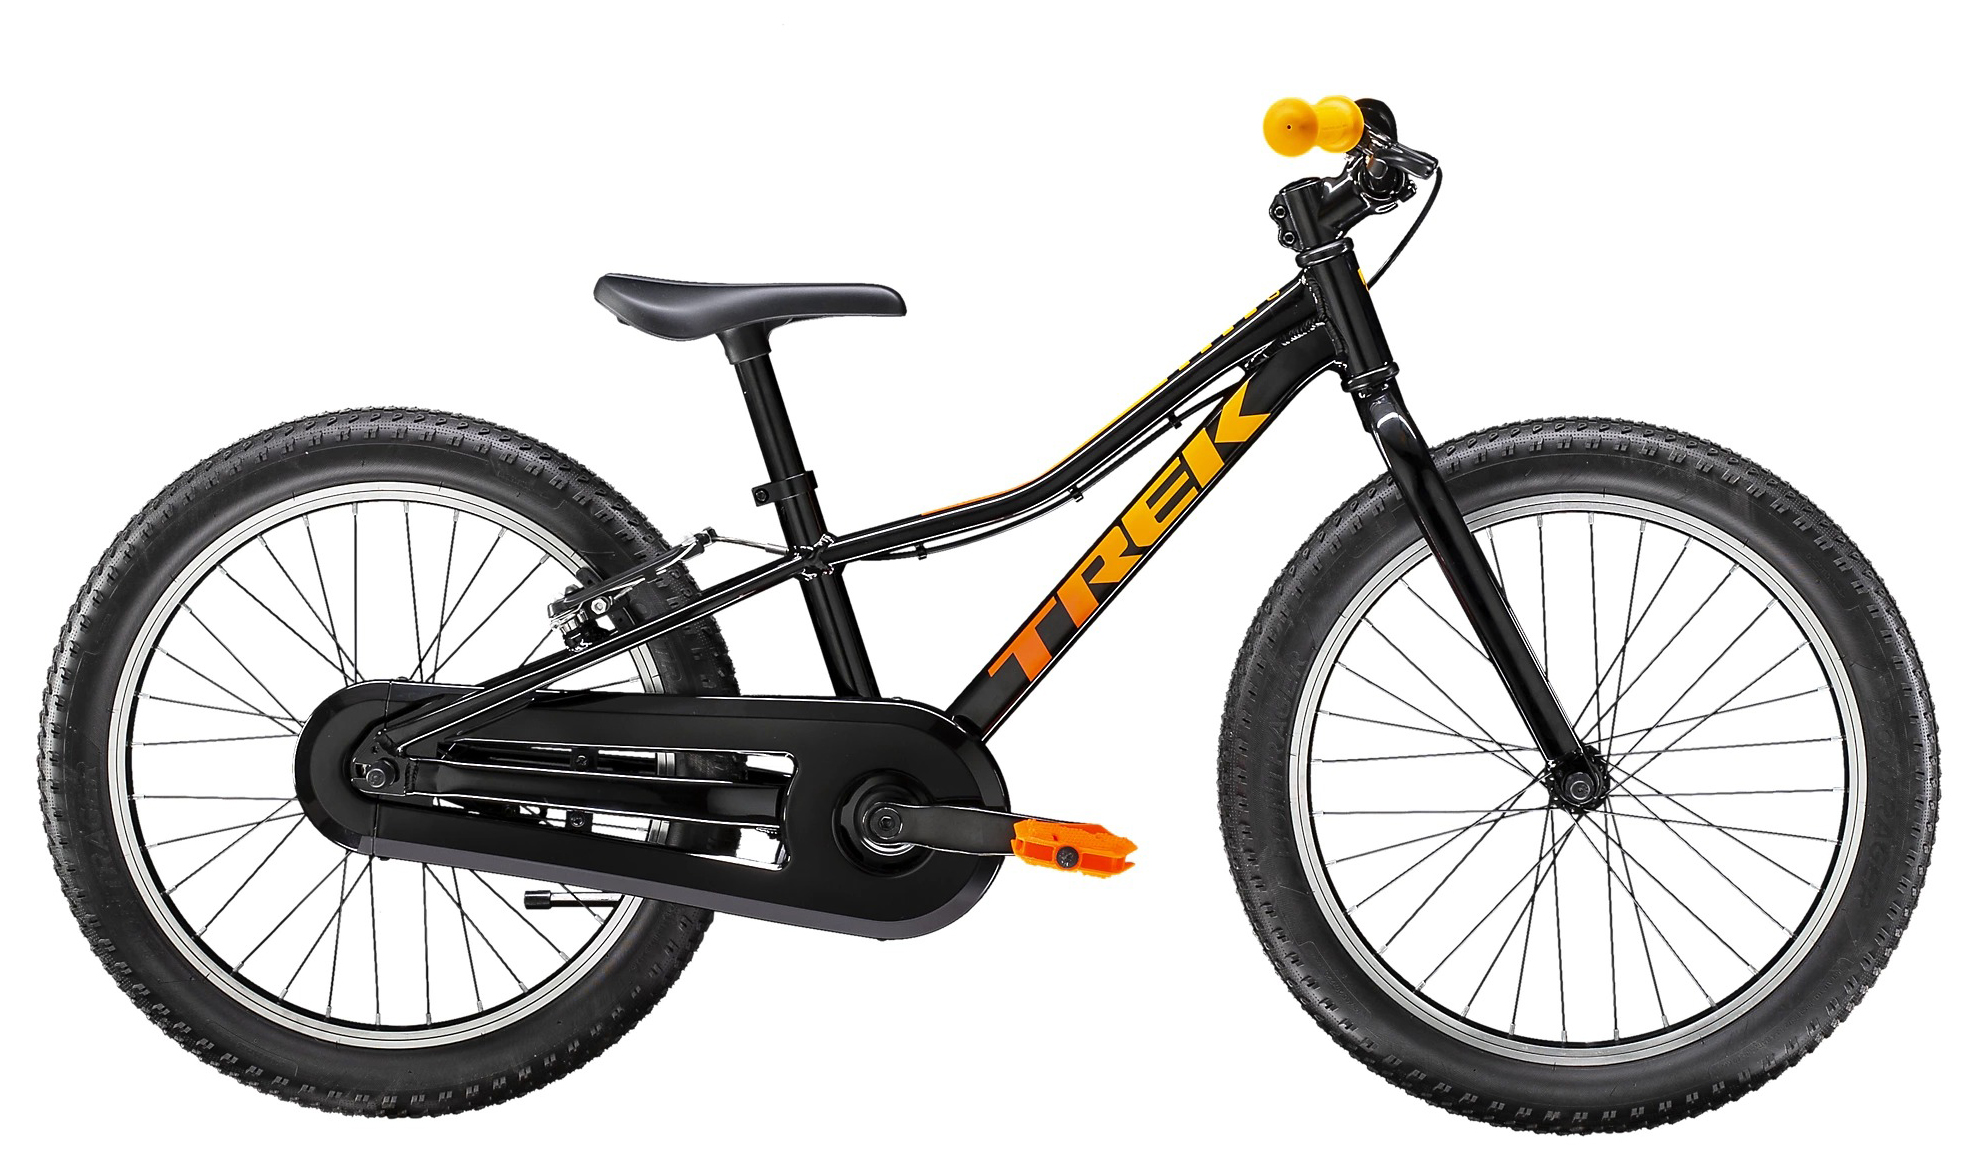  Отзывы о Детском велосипеде Trek Precaliber 20 CST B S 2020